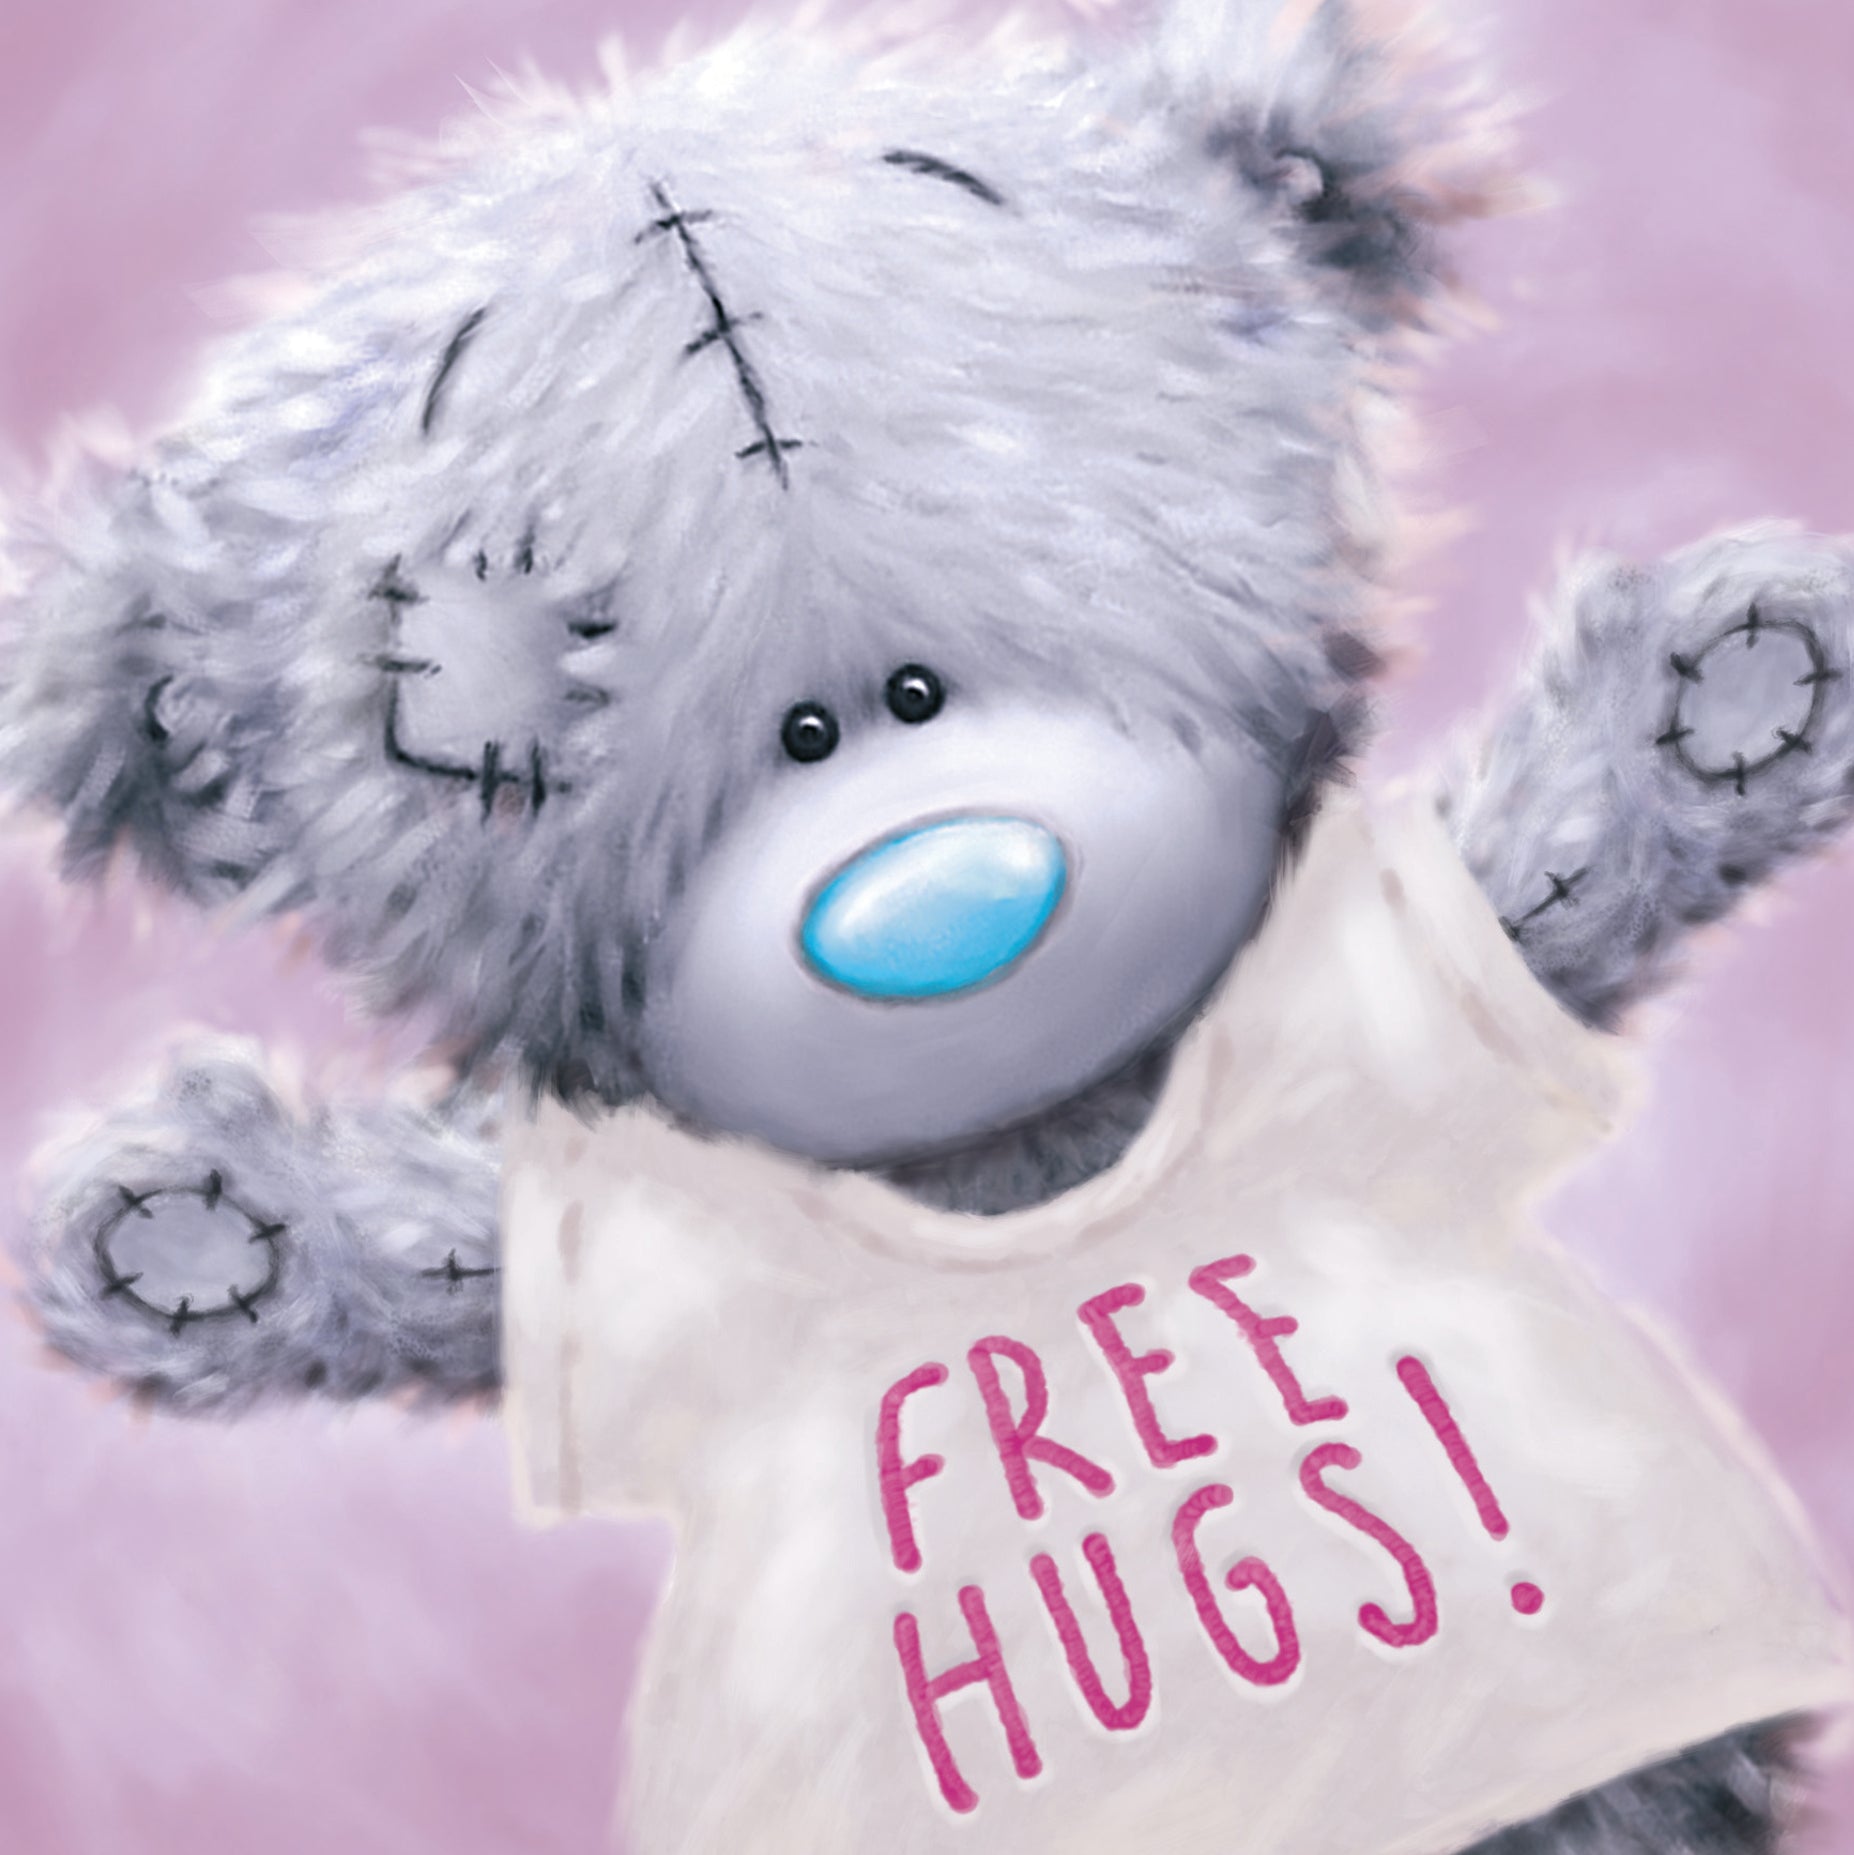 Open Bear in Hugs Free T shirt Card - Blank